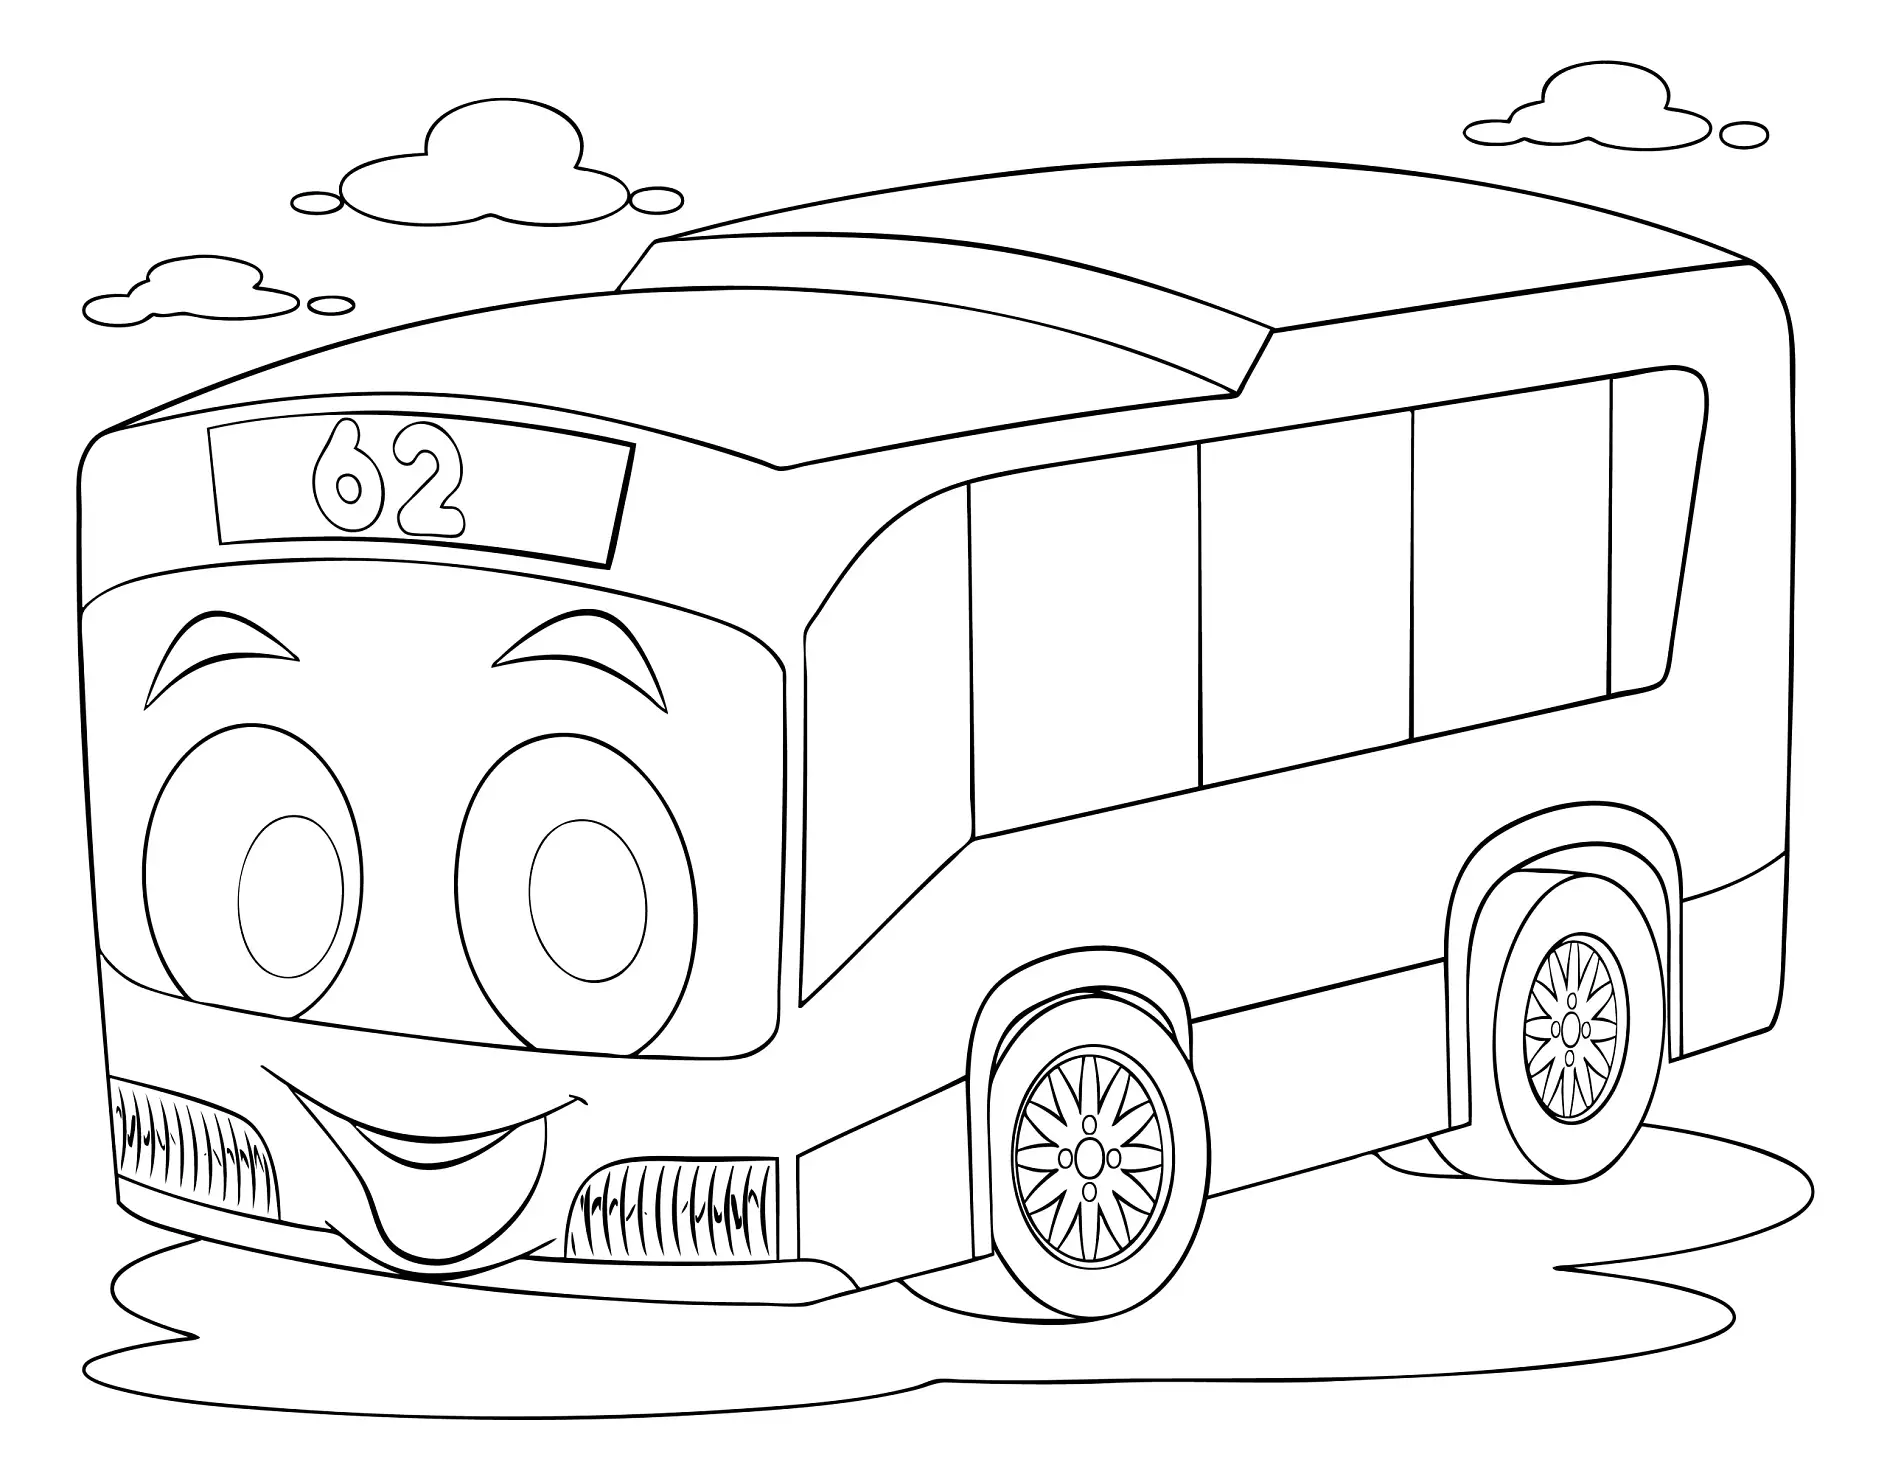 Ausmalbild Bus mit freundlichem Gesicht und Nummer 62